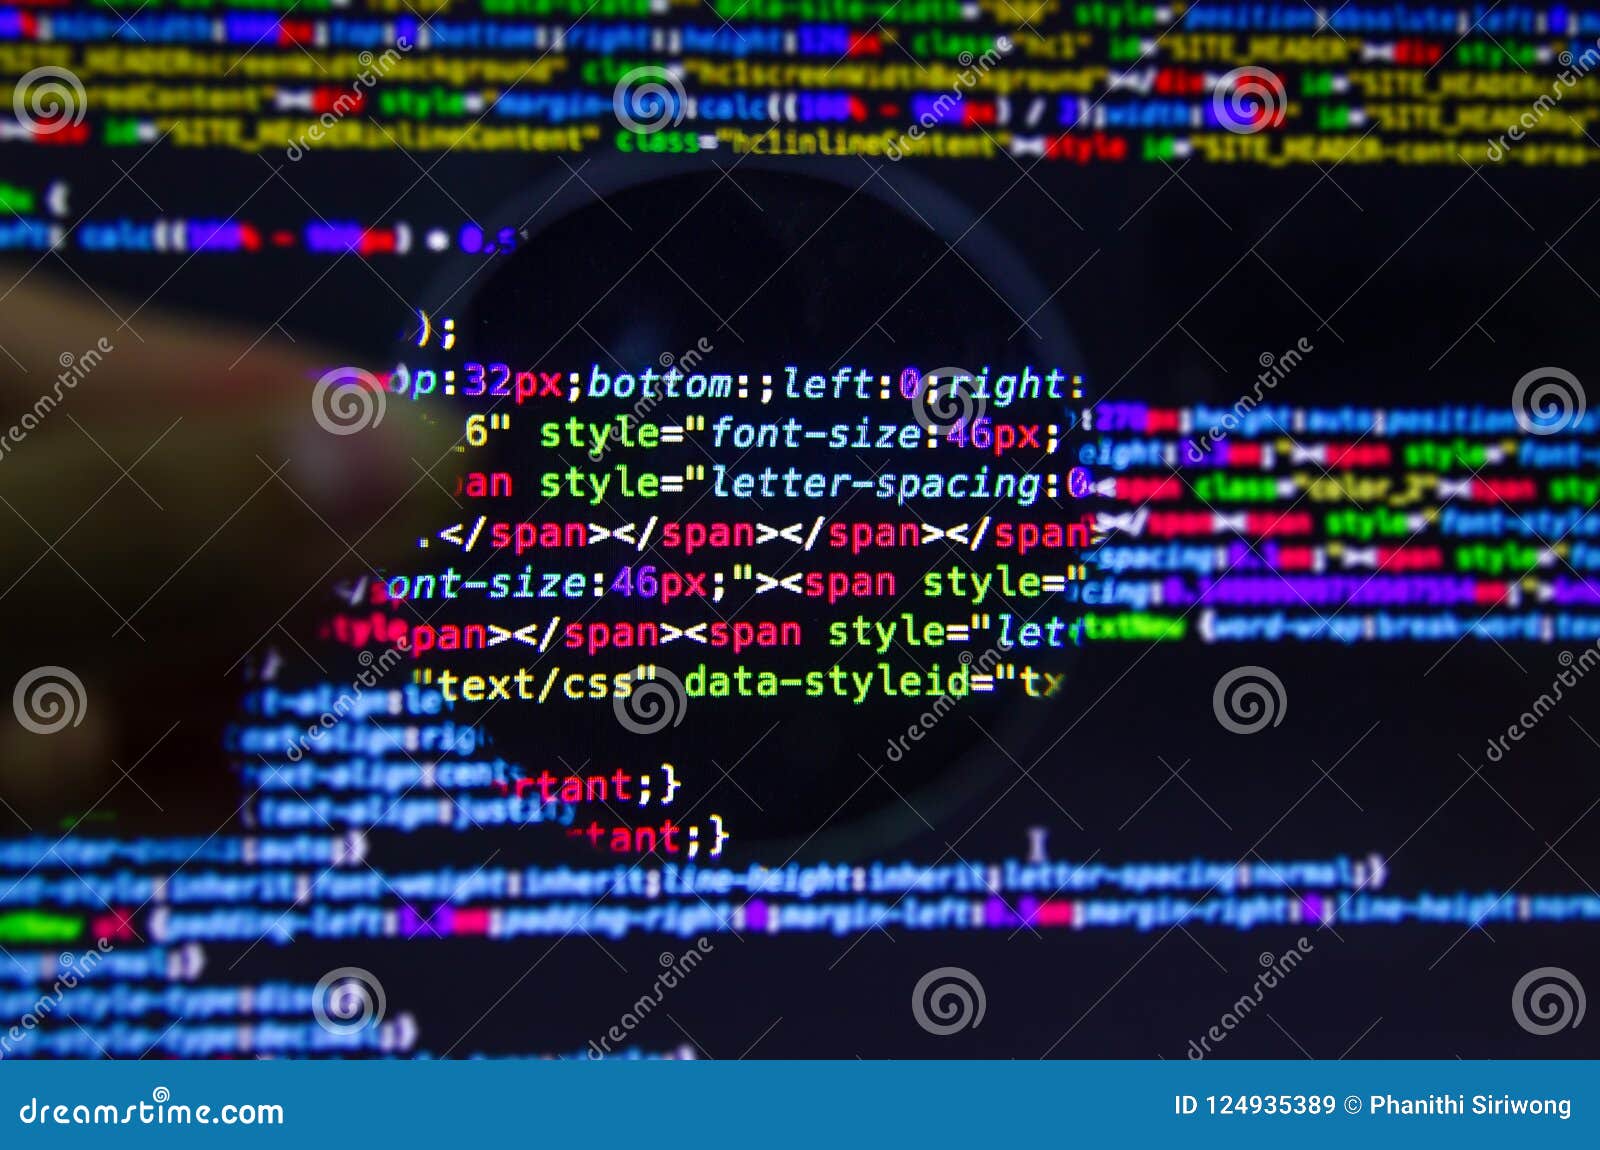 Desktop source code and technology background, Developer or